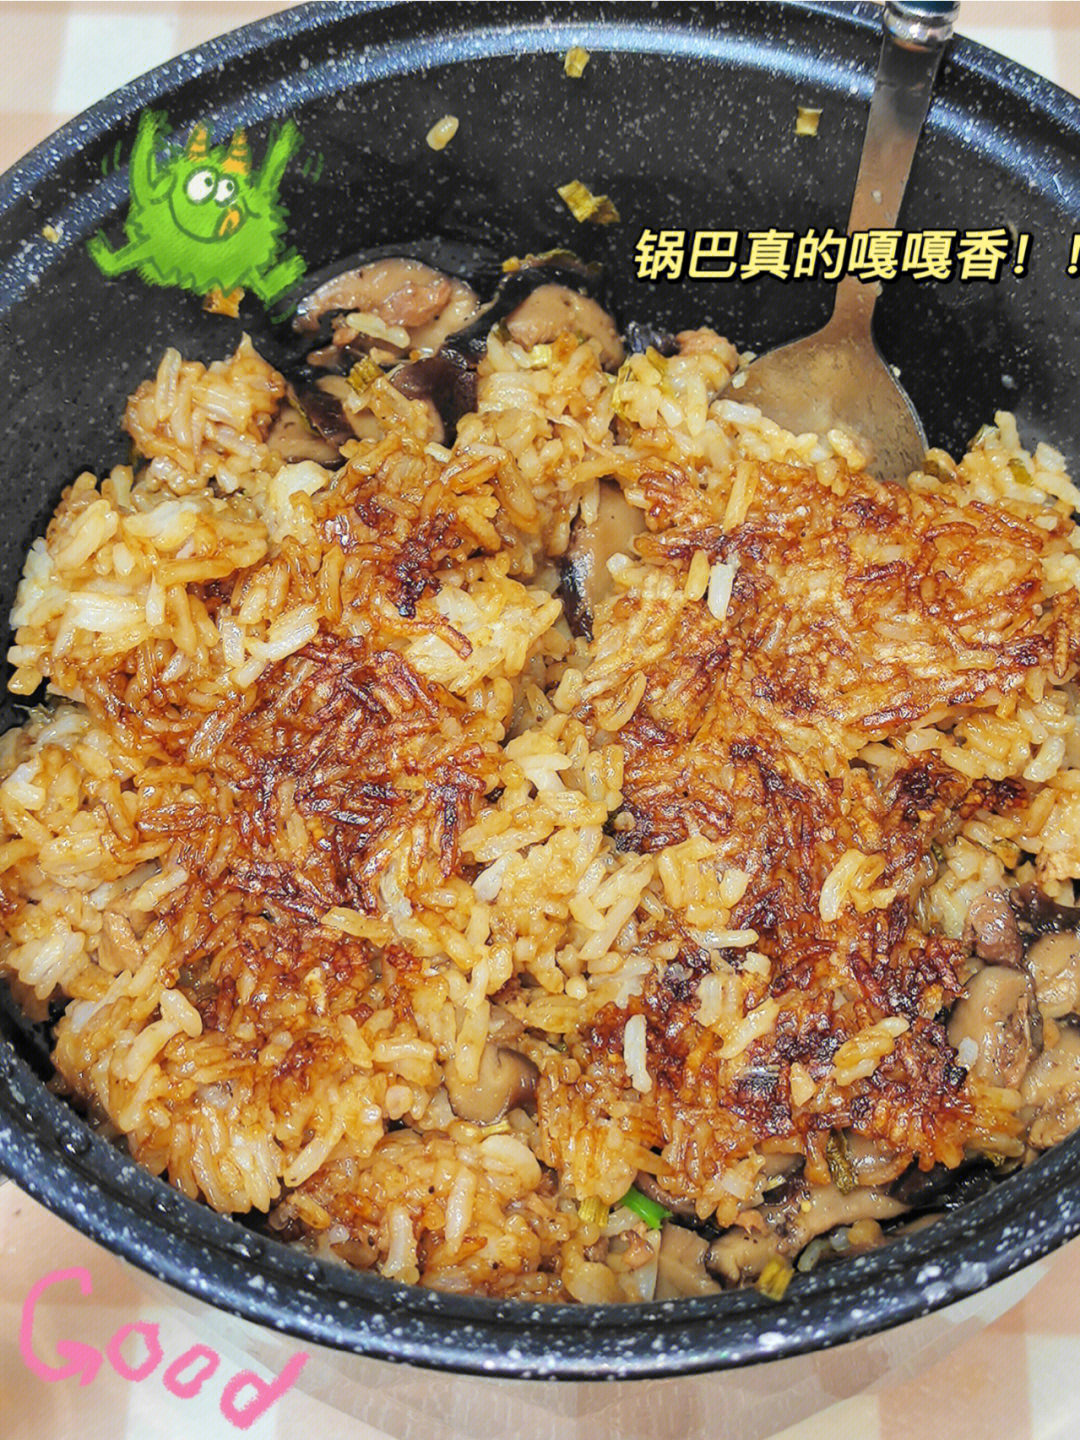 锅巴米饭的做法及图片图片